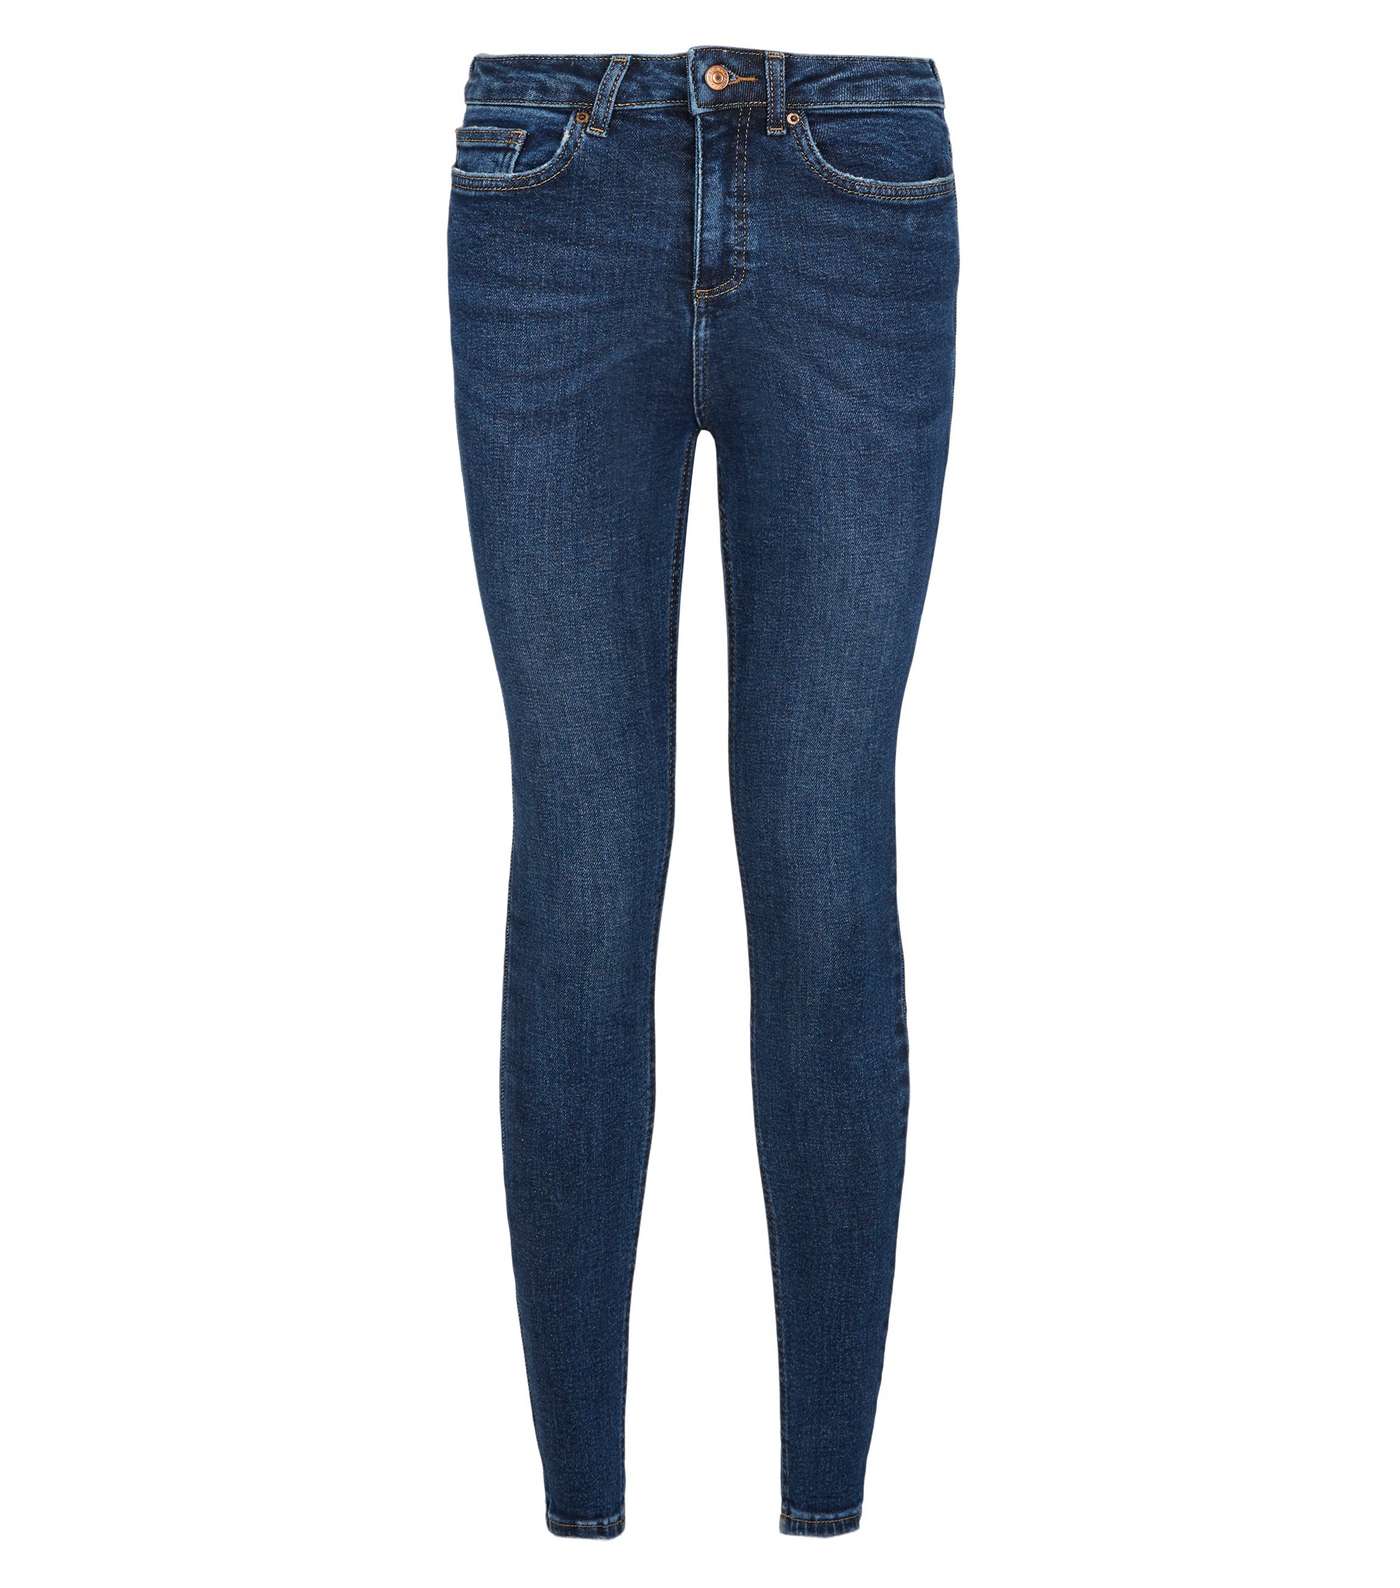 Blue Rinse Wash Hallie Super Skinny Jeans Image 4